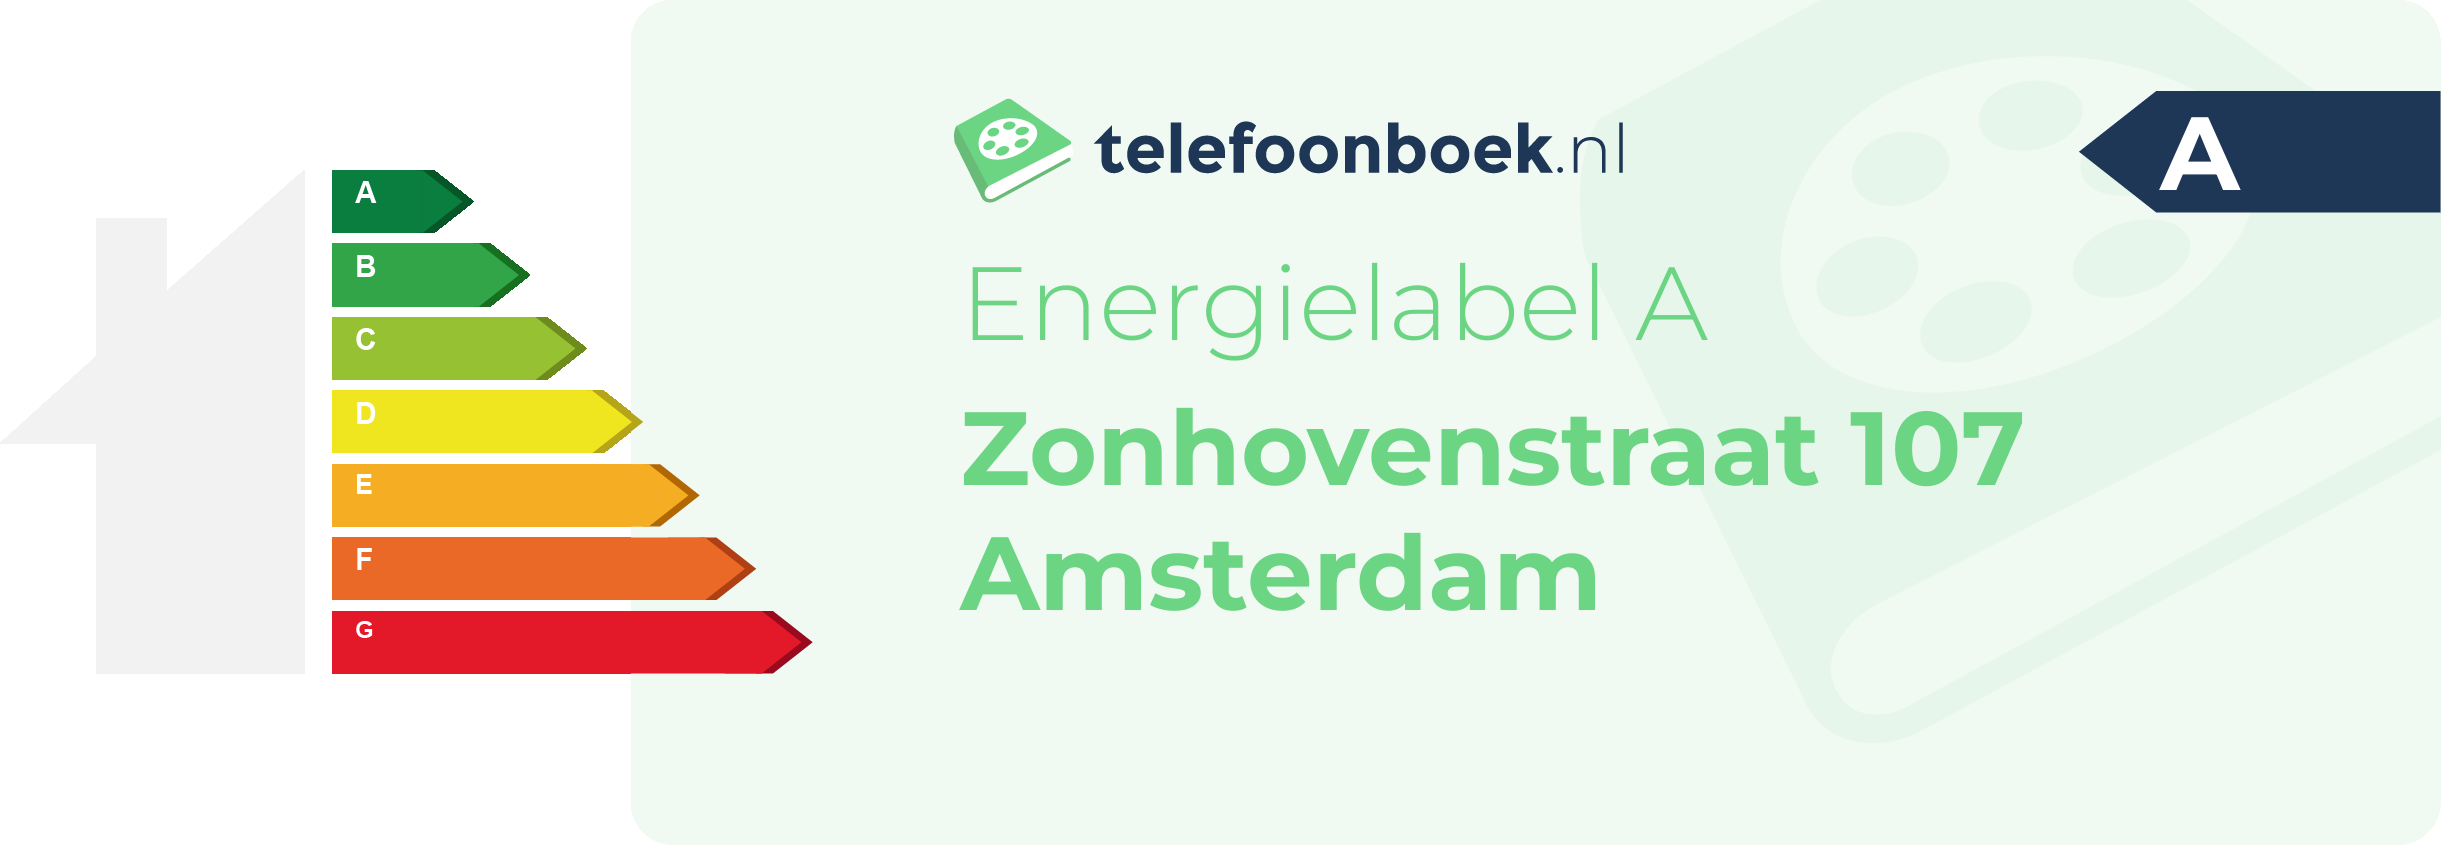 Energielabel Zonhovenstraat 107 Amsterdam